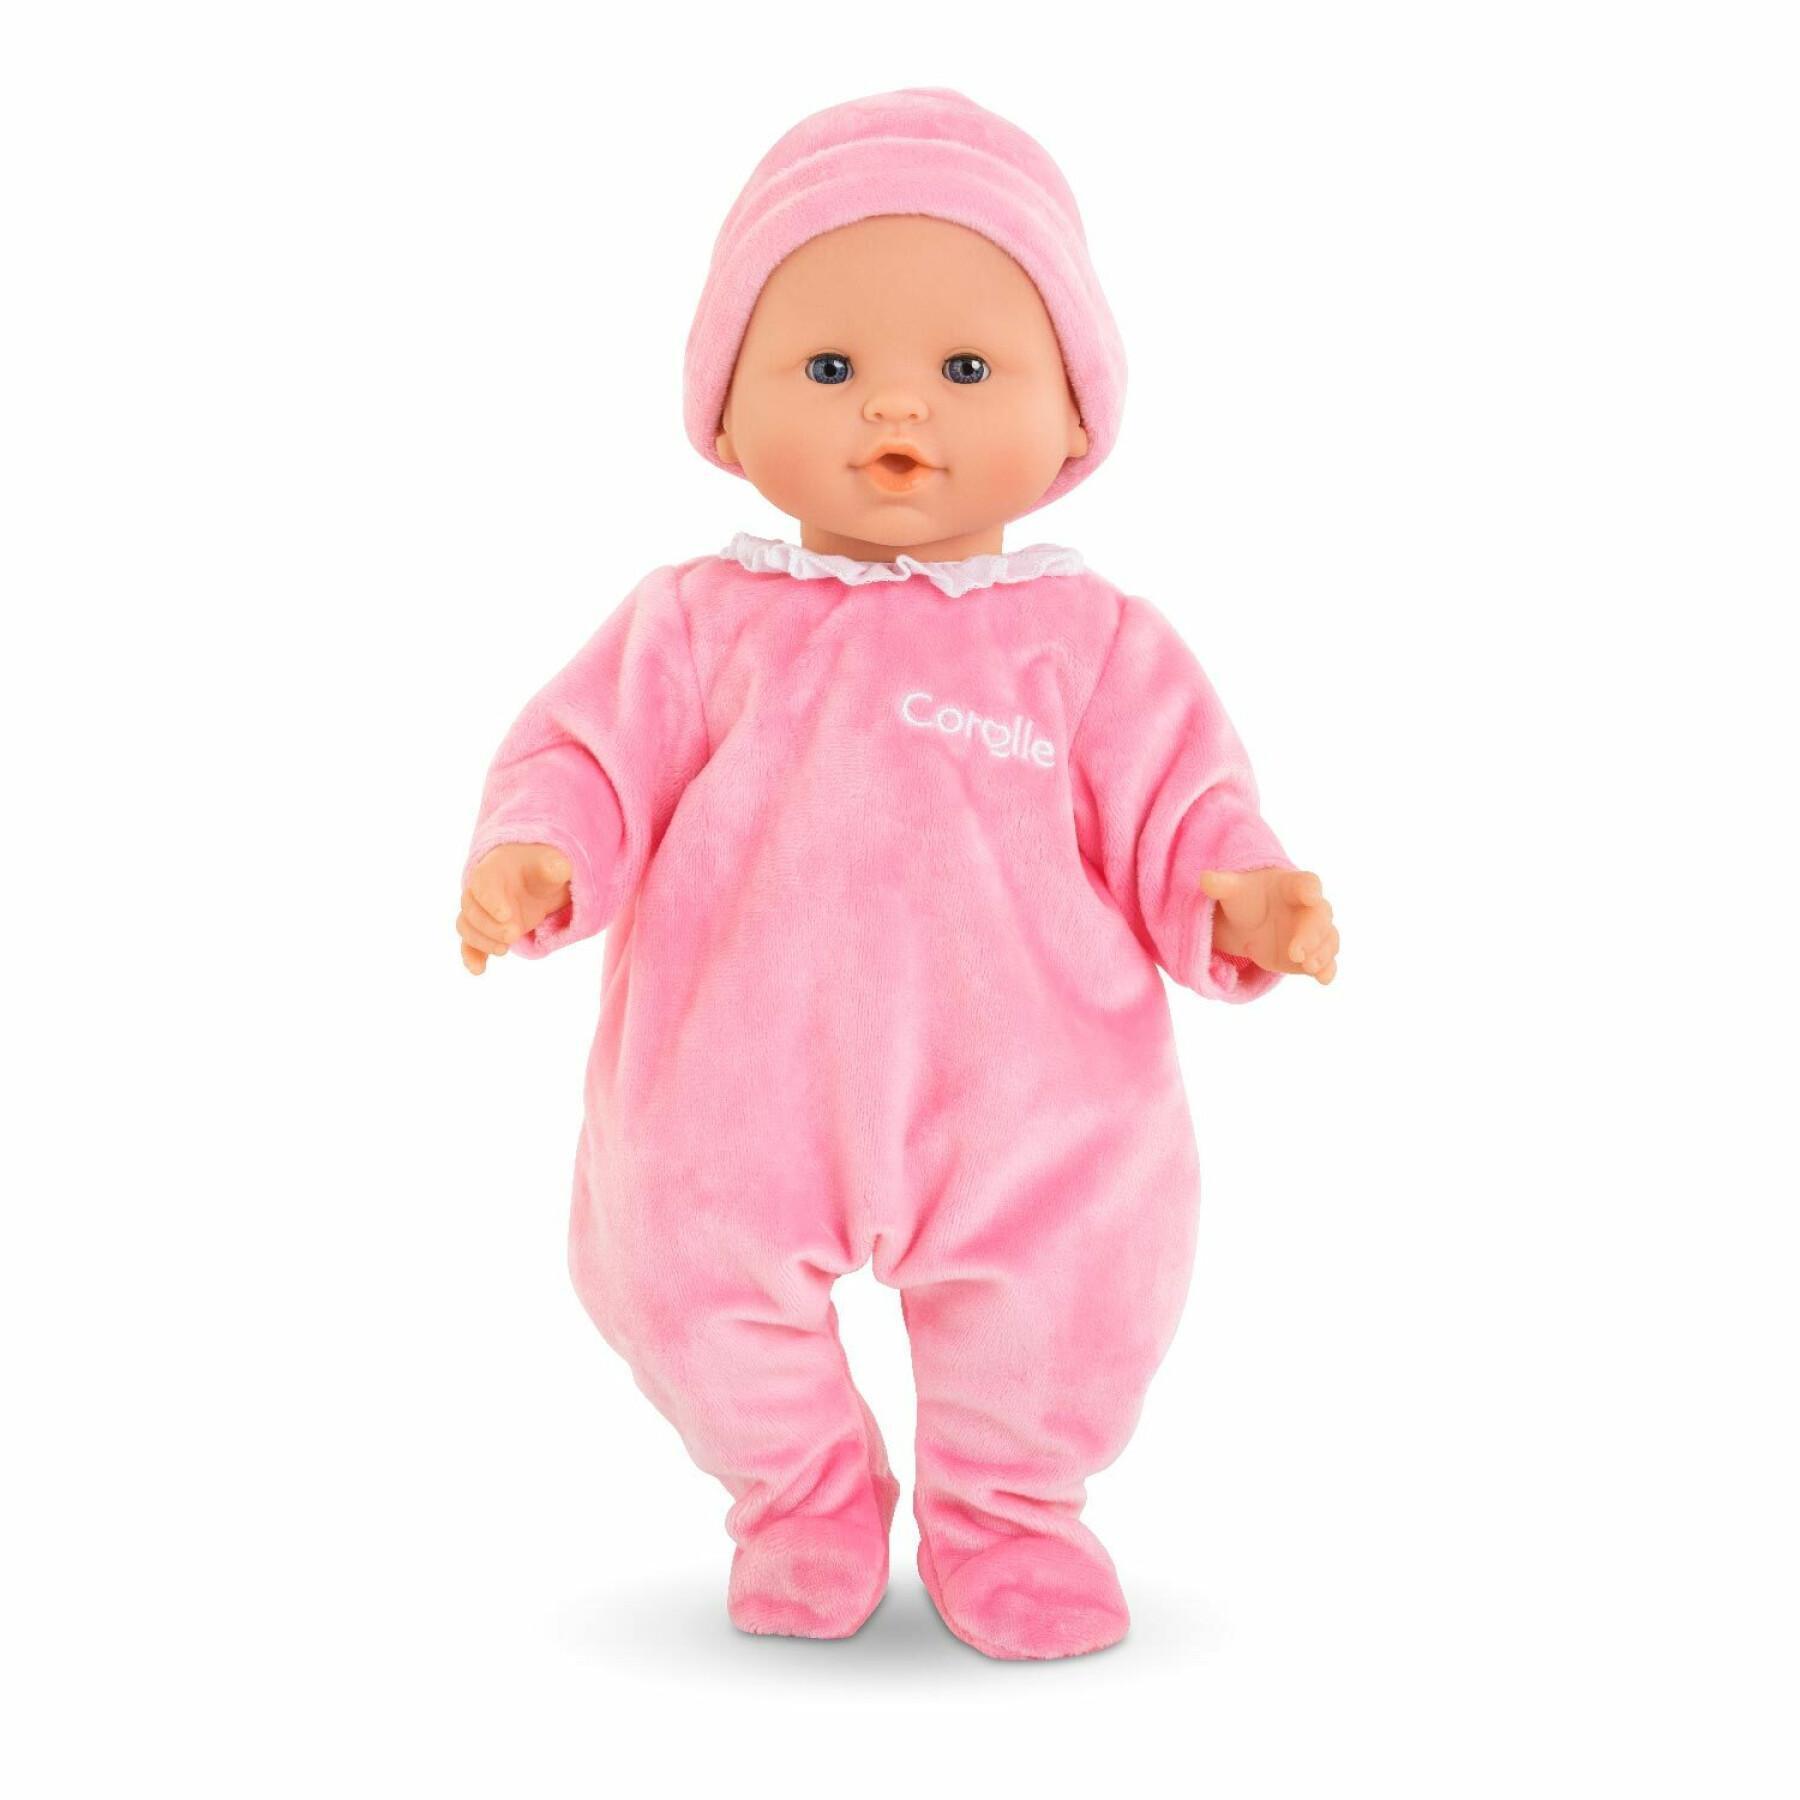 Pyjamas och mössa för spädbarn Corolle